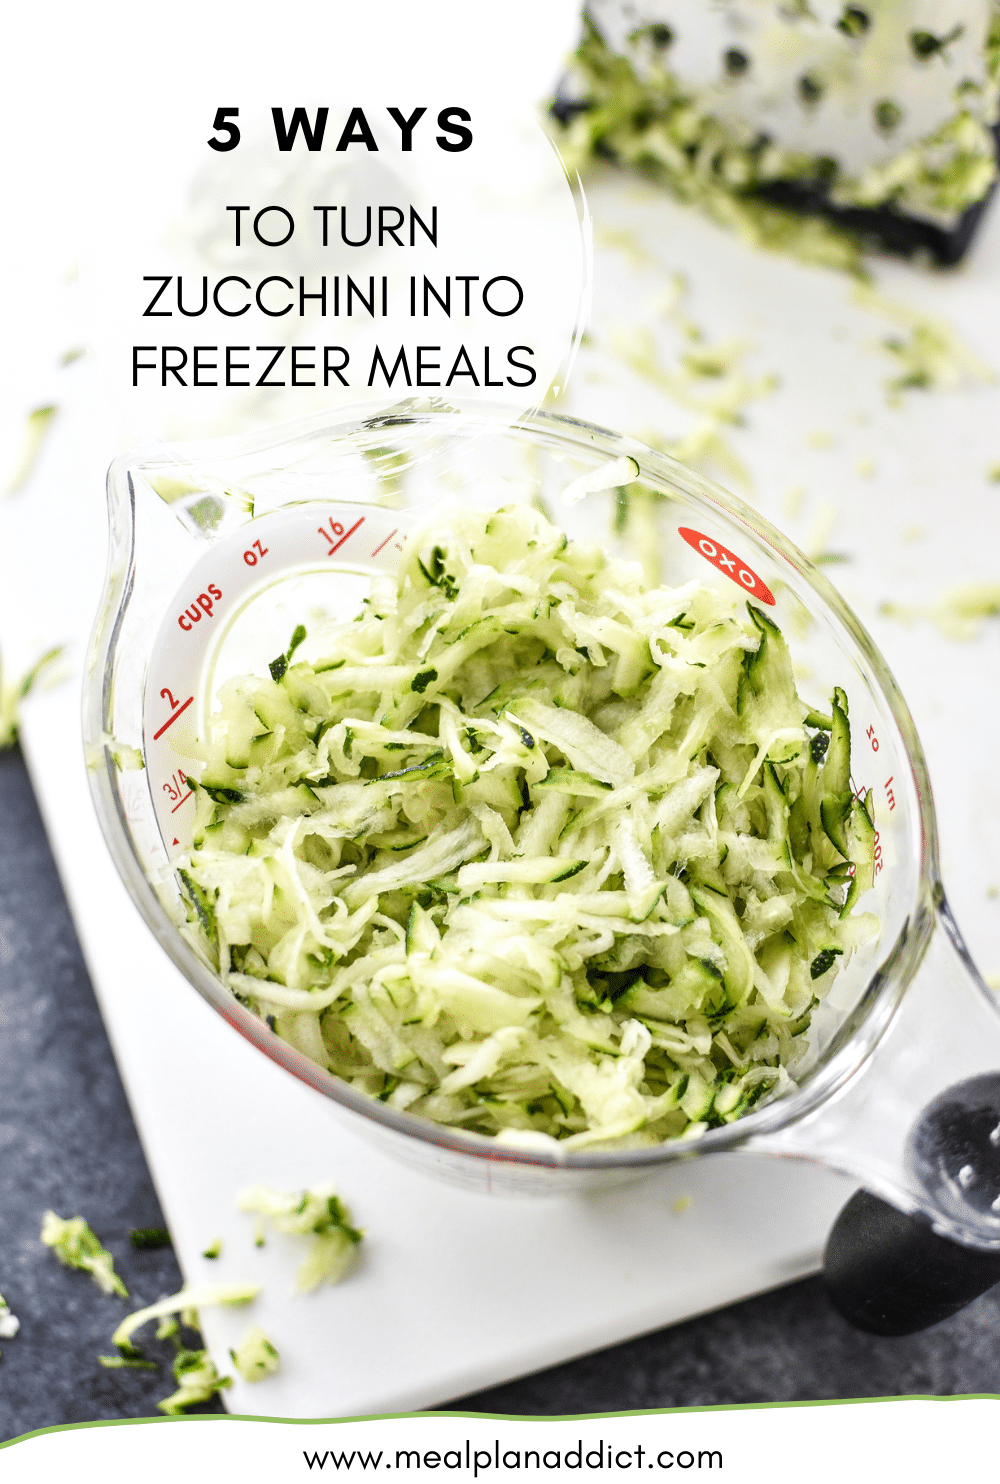 5 Ways to turn zucchini into freezer meals